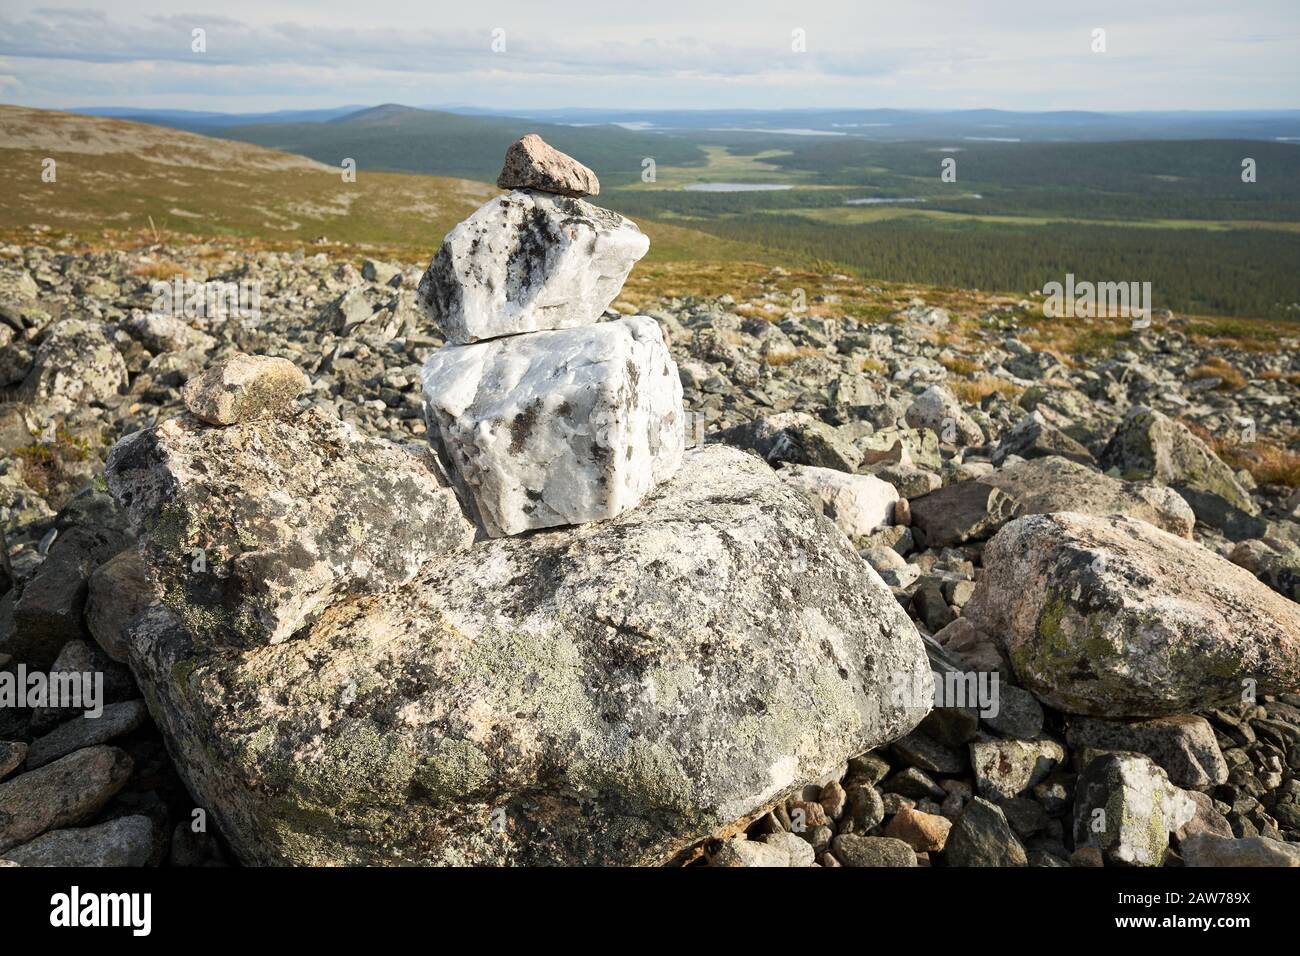 Schöner Steinstapel und Blick von einem fiel über Wälder, Seen und Sümpfe Lapplands. Pallas-Yllastunturi National Park, Finnland. Stockfoto